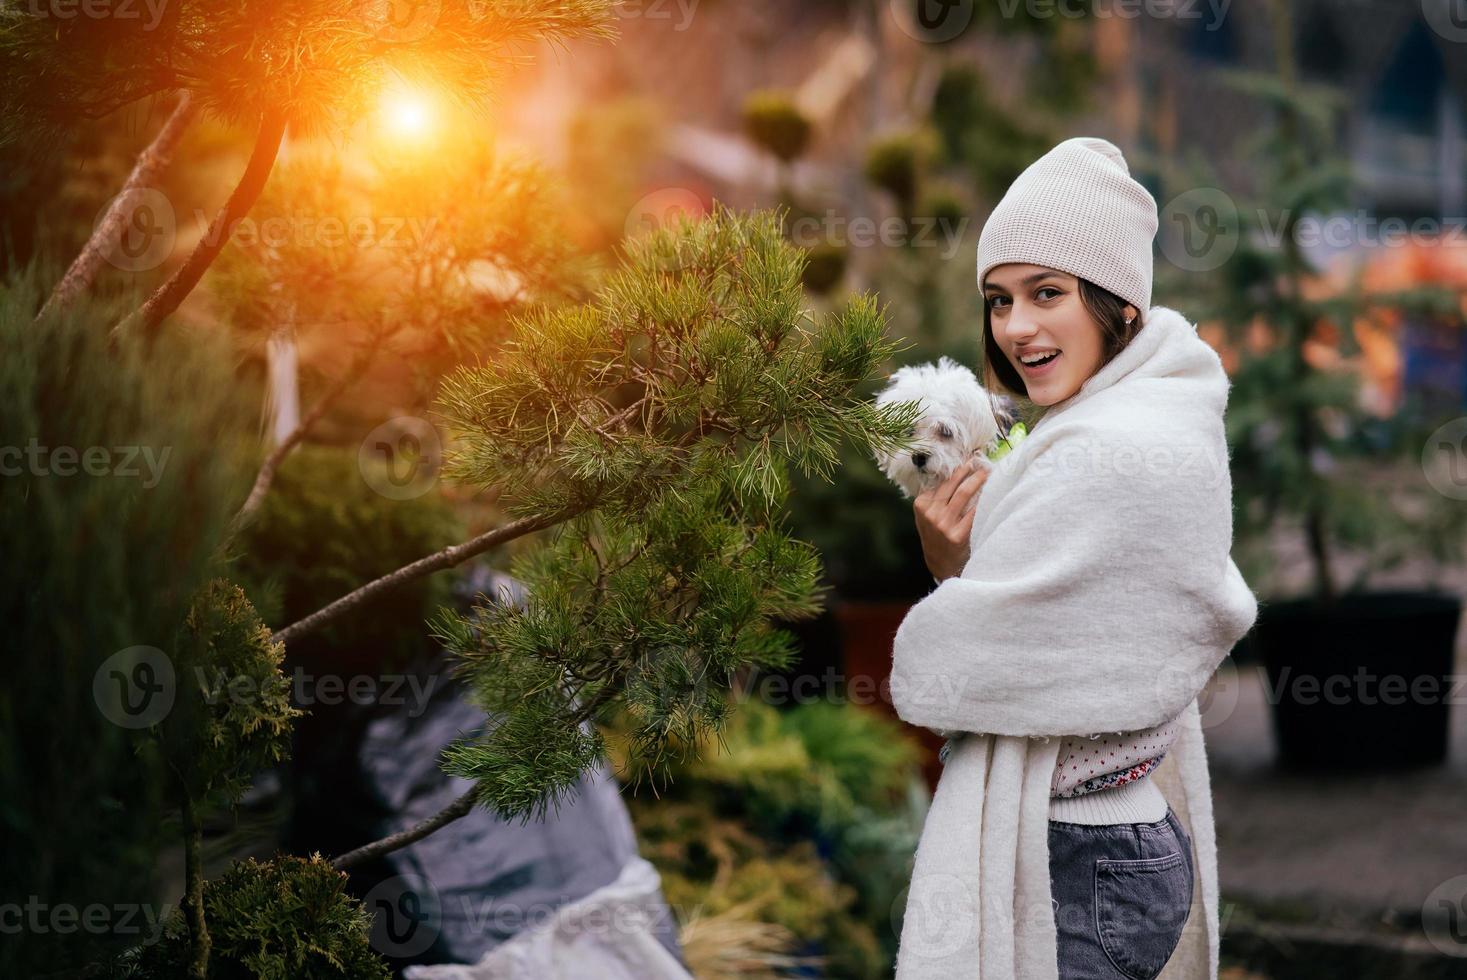 mulher com um cachorro branco nos braços perto de árvores de natal verdes foto